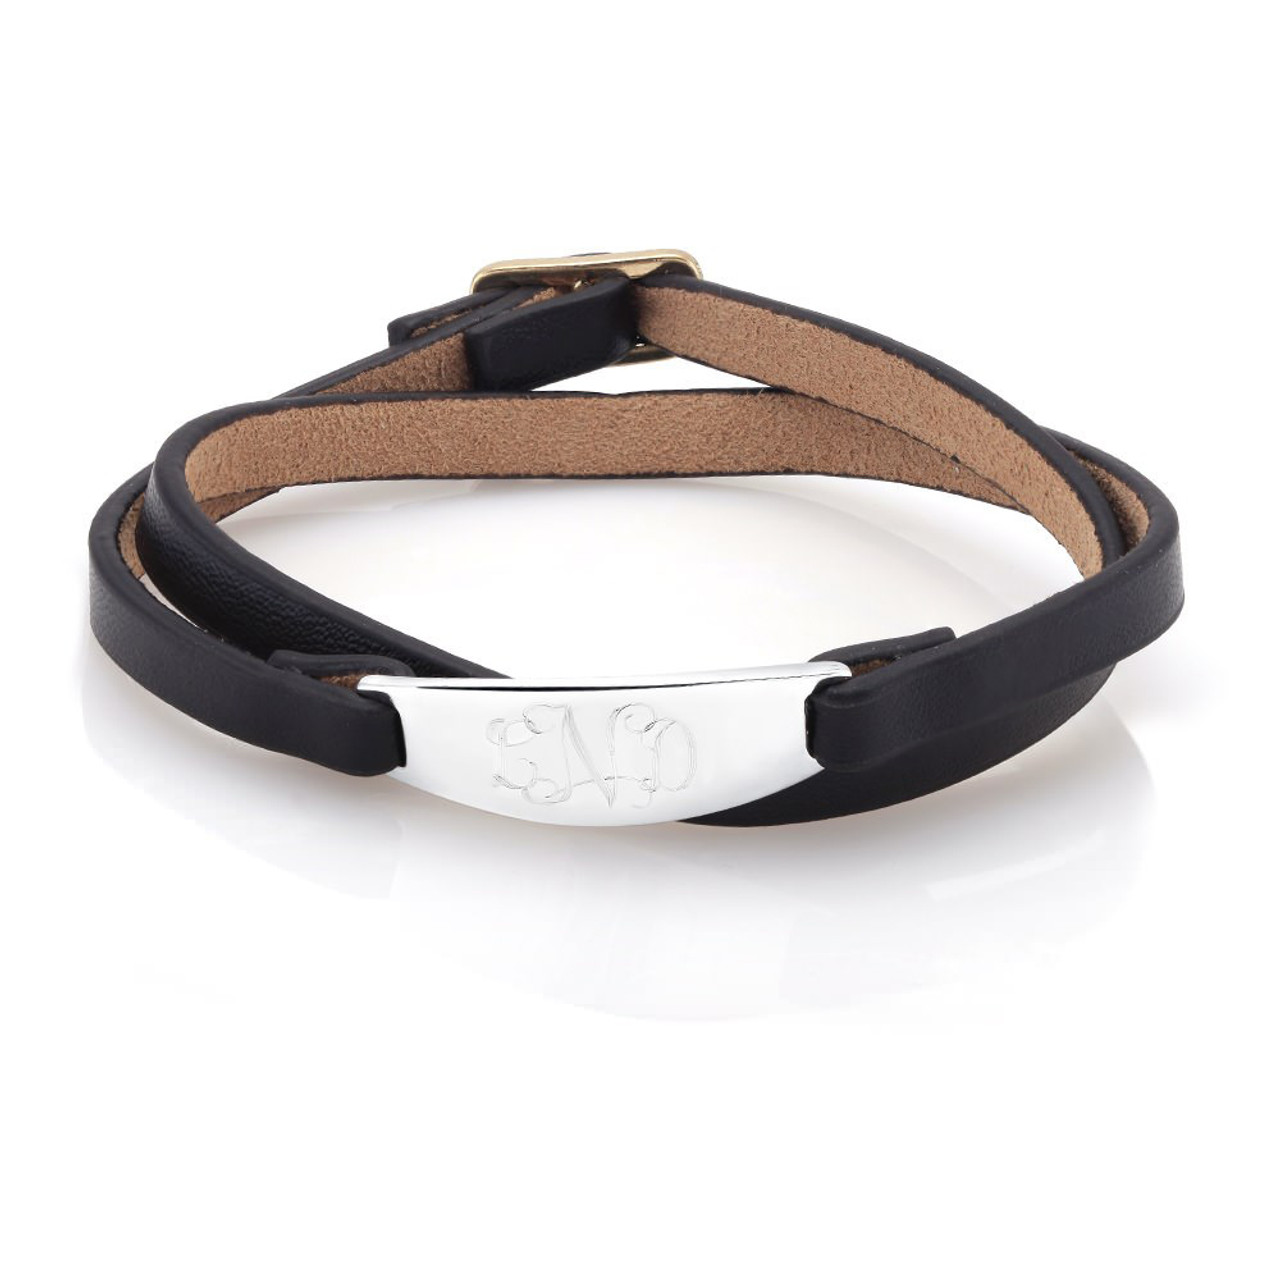 Personalized Bracelet product image